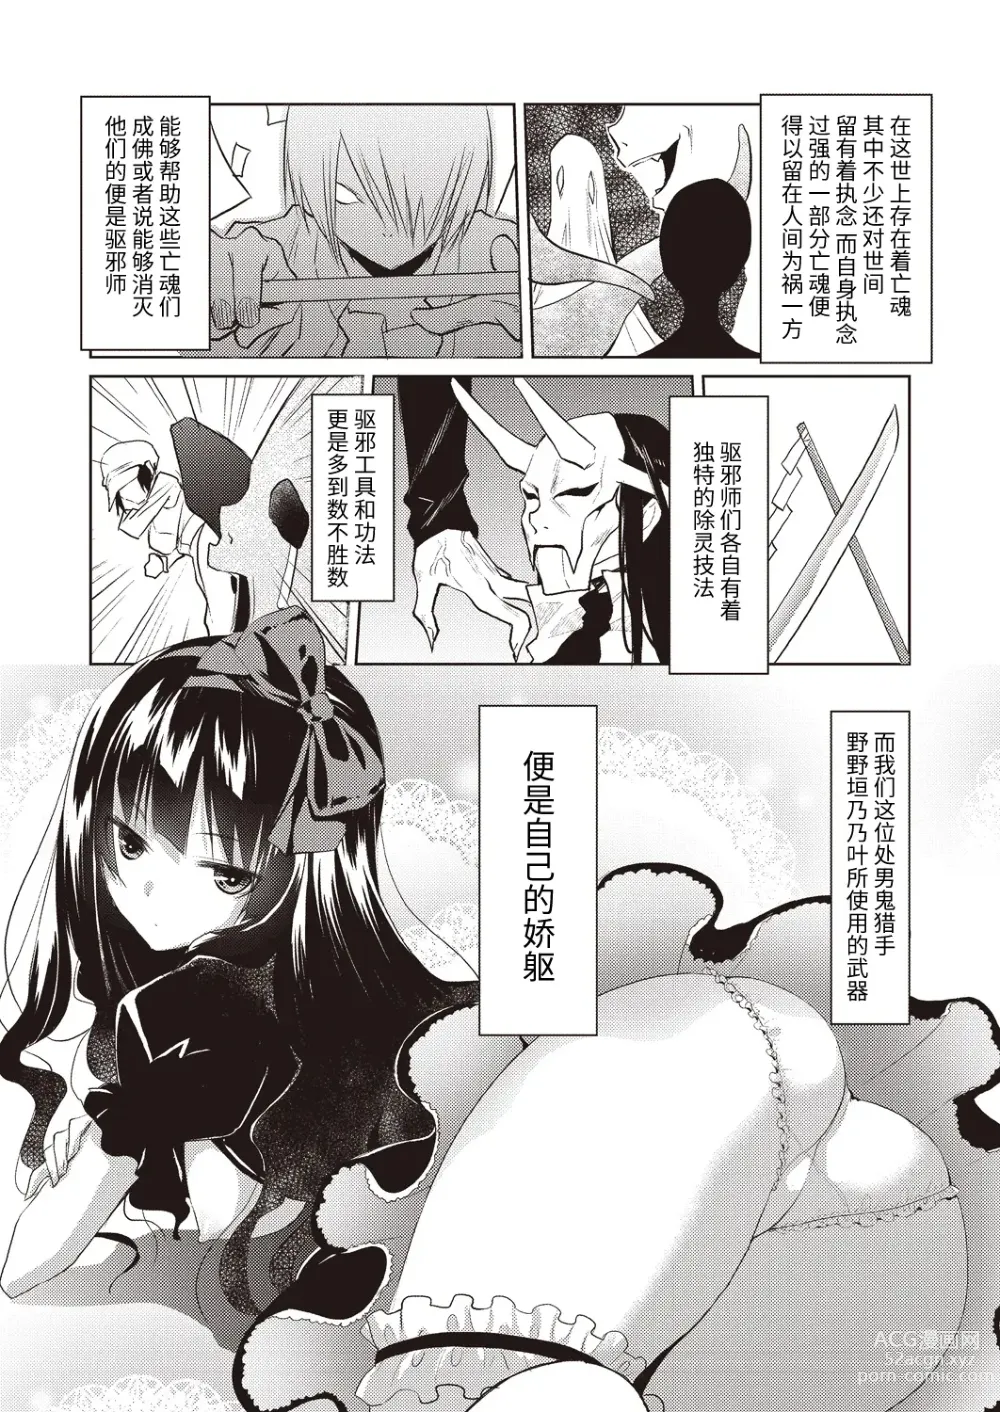 Page 3 of manga Kareobana Kitan Ch.1